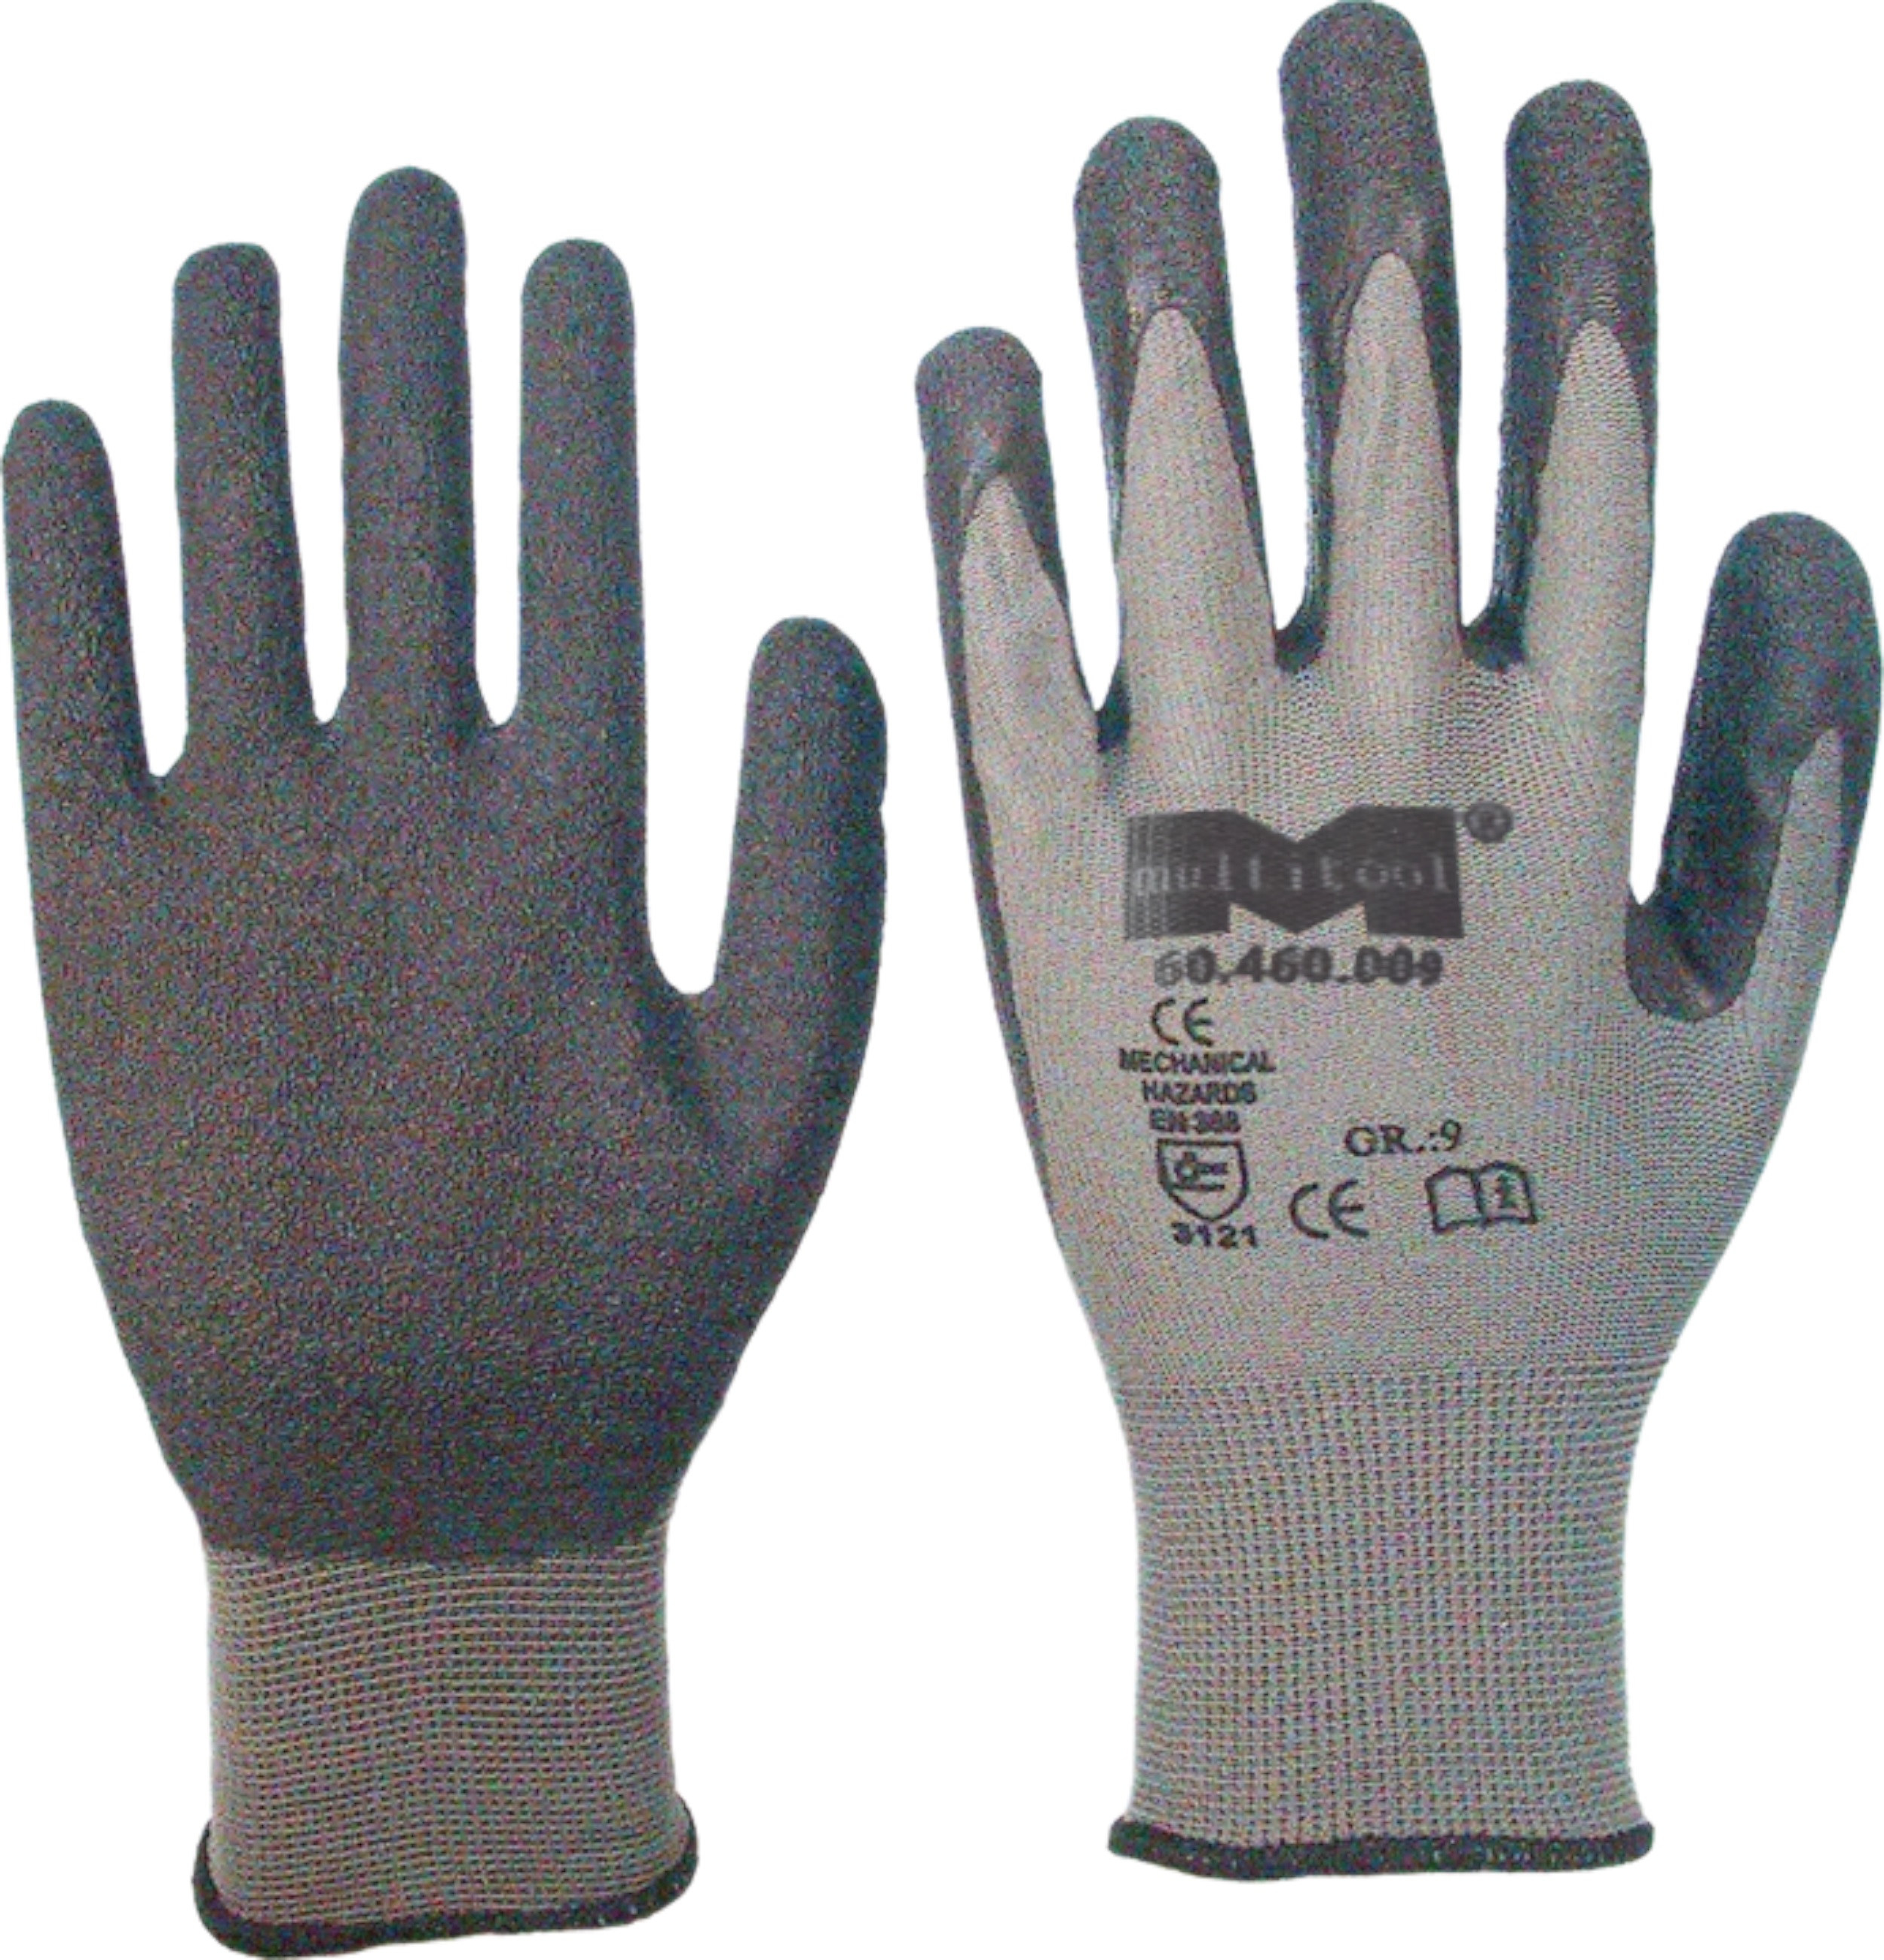 Stretch Handschuhe mit Latex Beschichtung